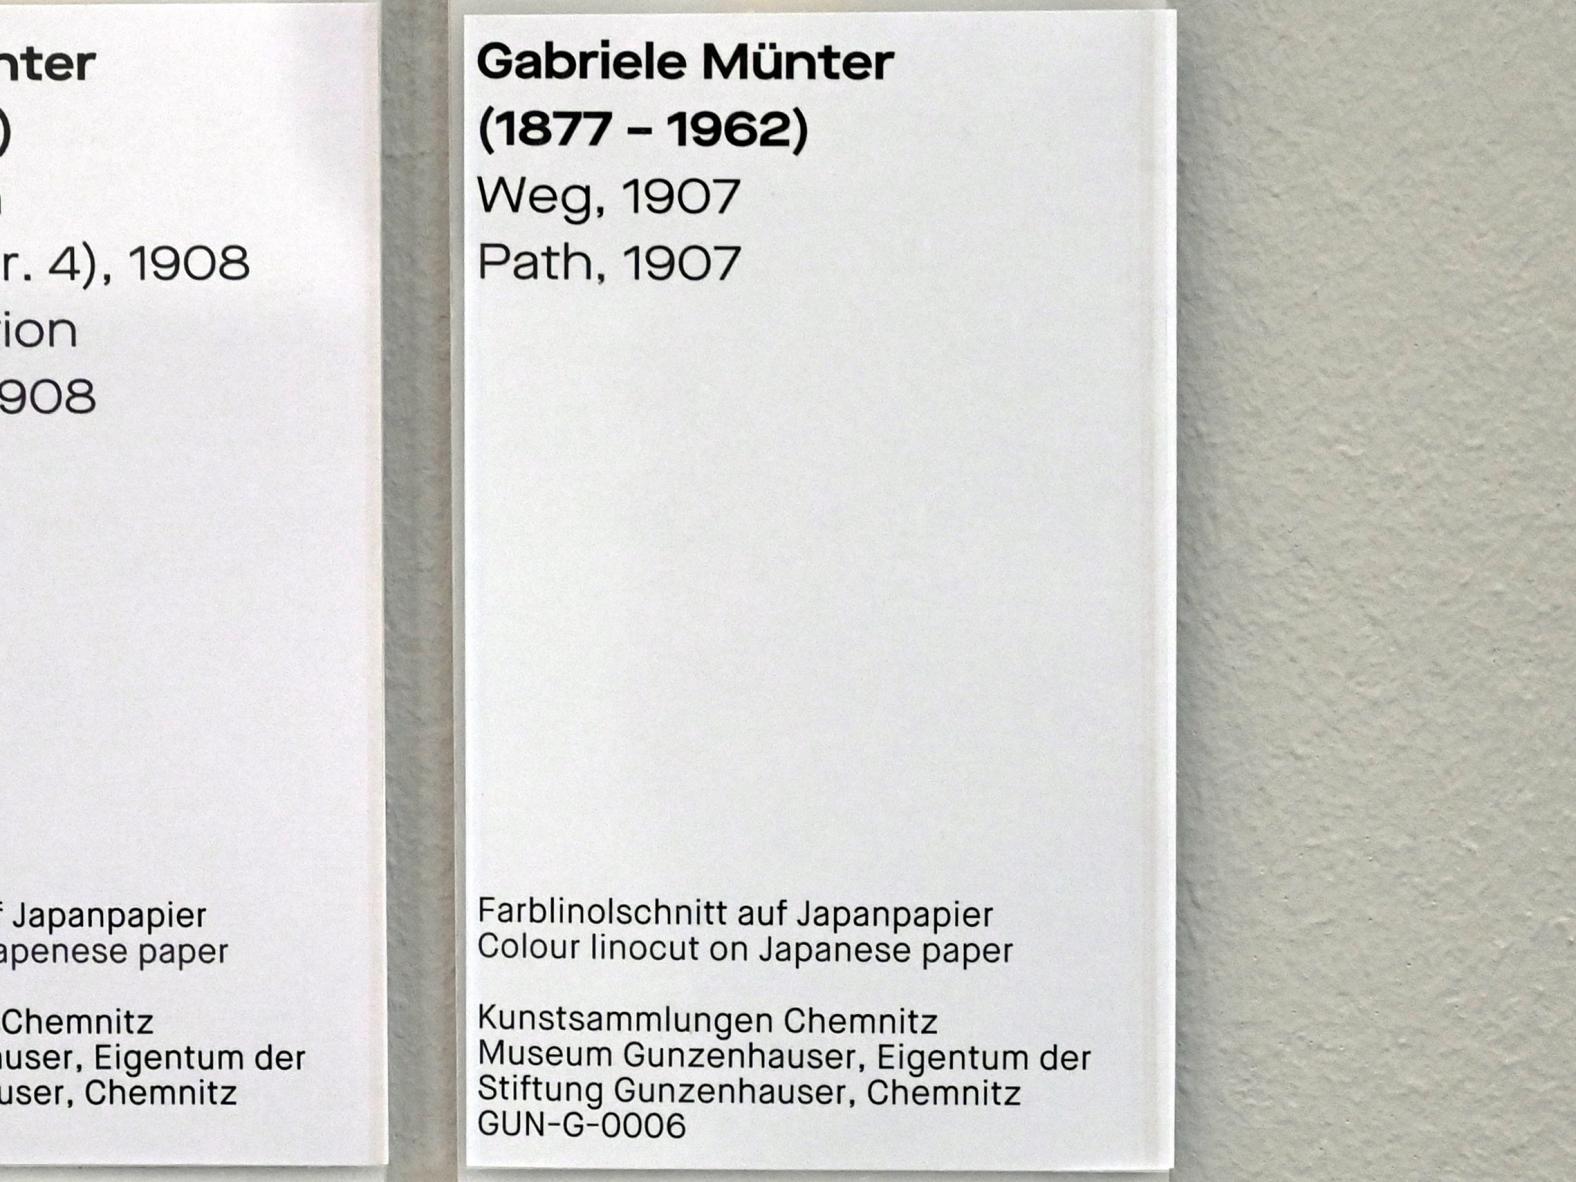 Gabriele Münter (1903–1954), Weg, Chemnitz, Museum Gunzenhauser, Saal 3.4, 1907, Bild 3/3